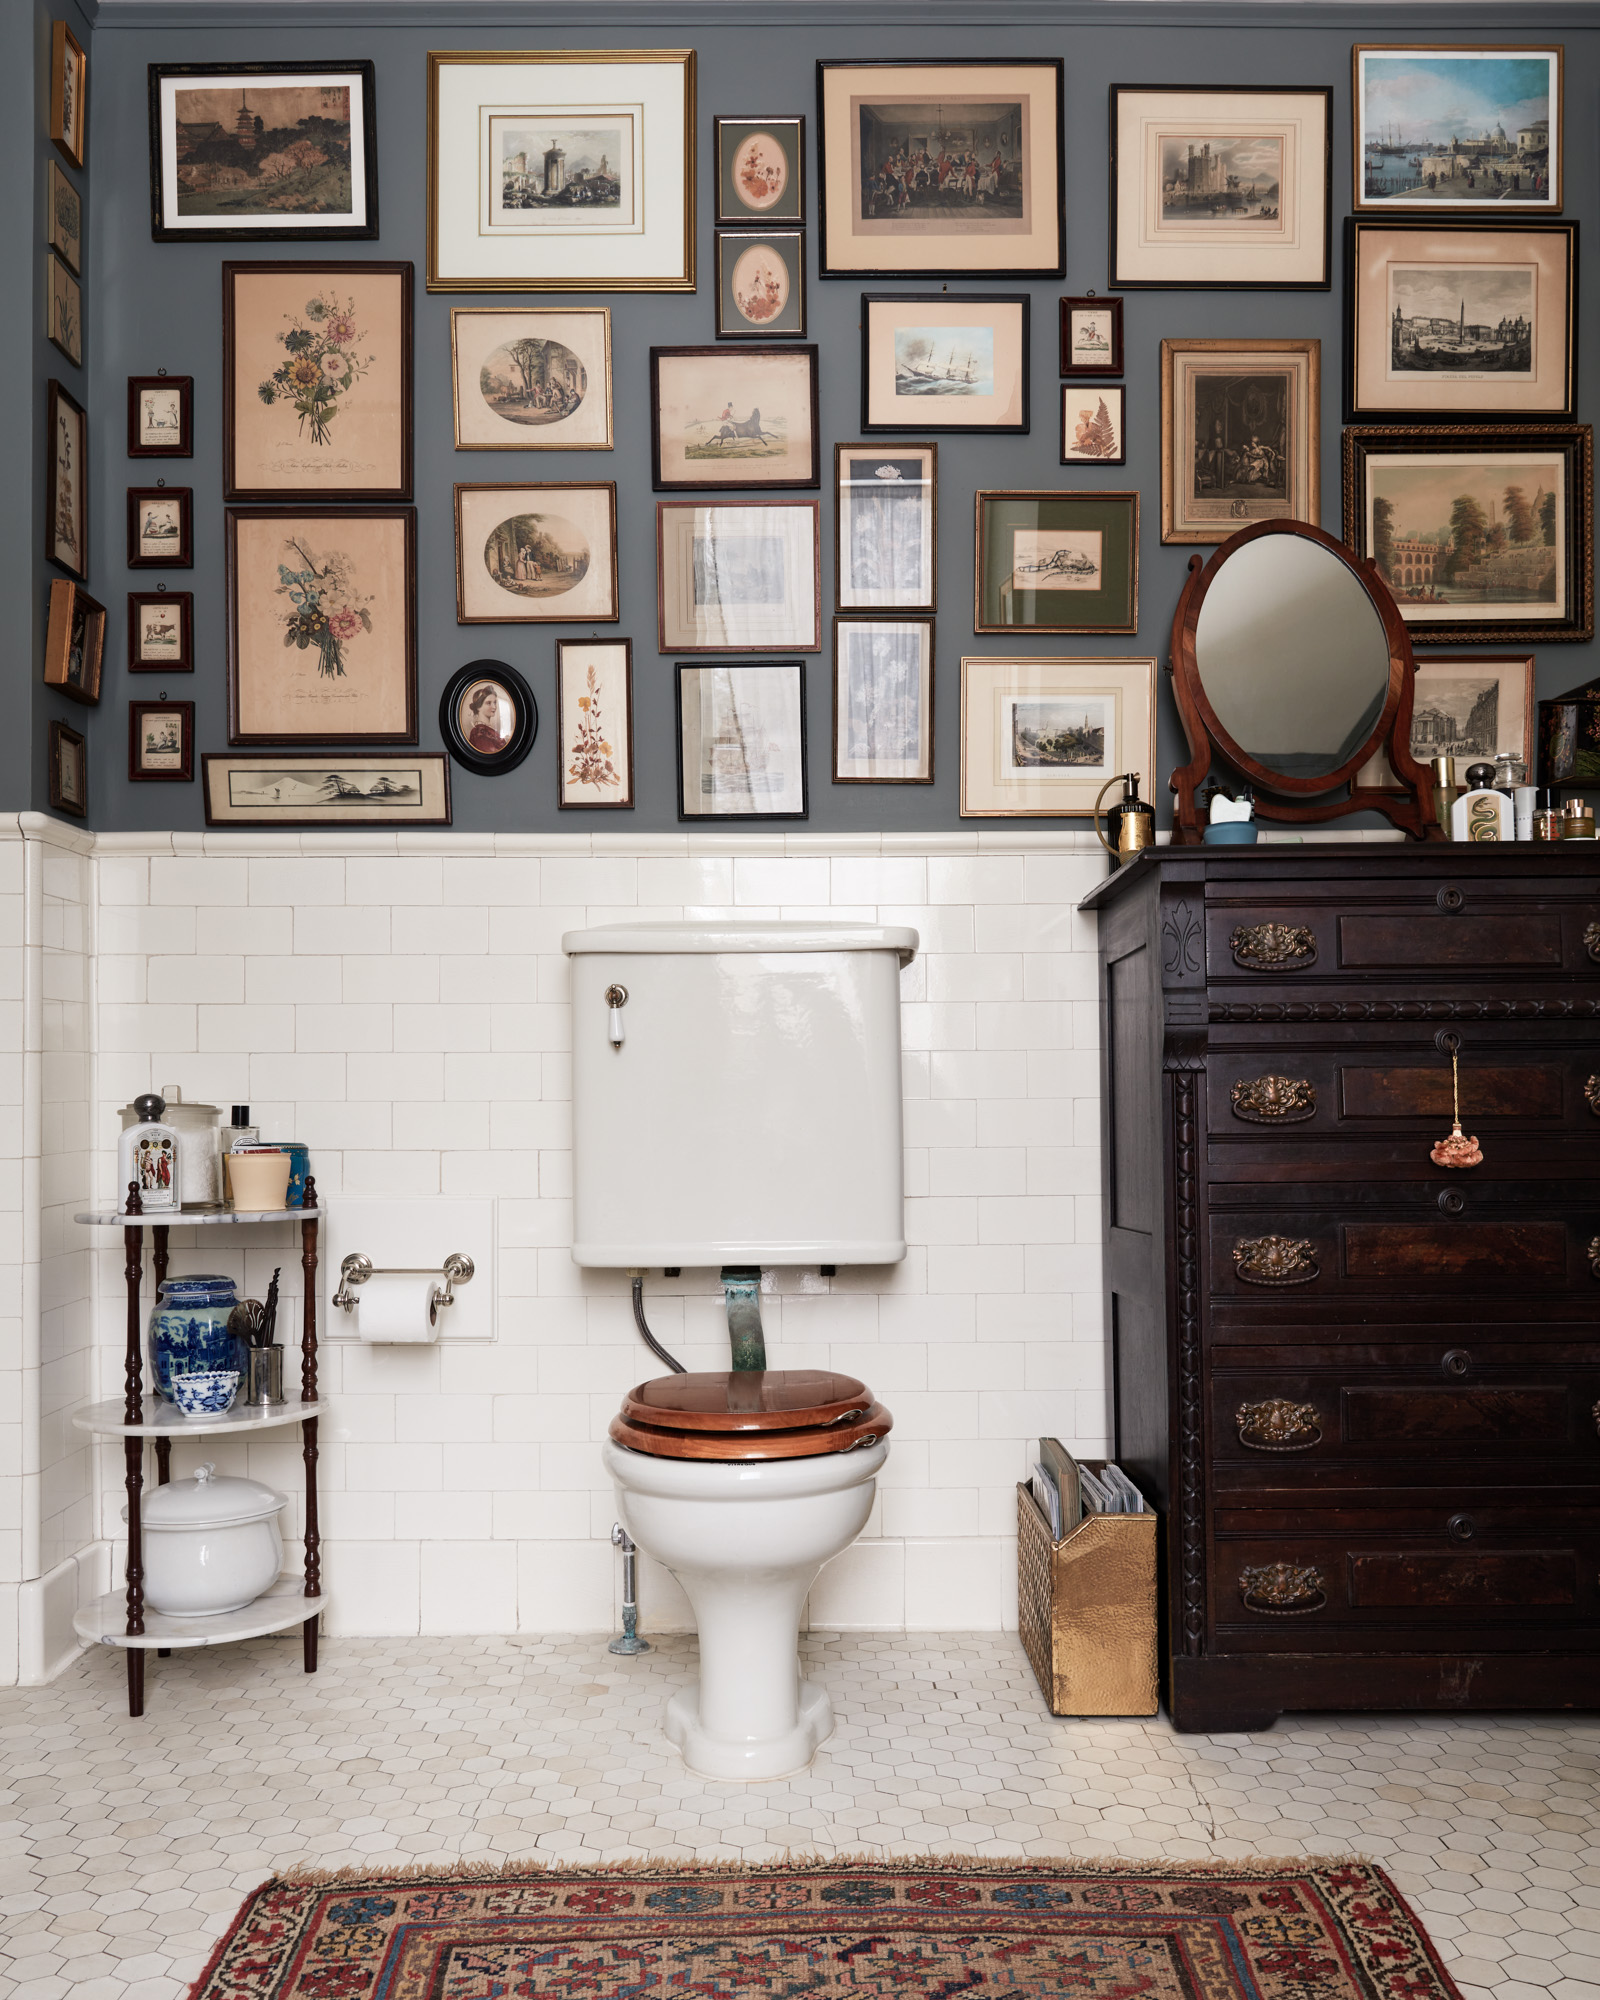 Brinson Vintage bathroom Gallery Wall